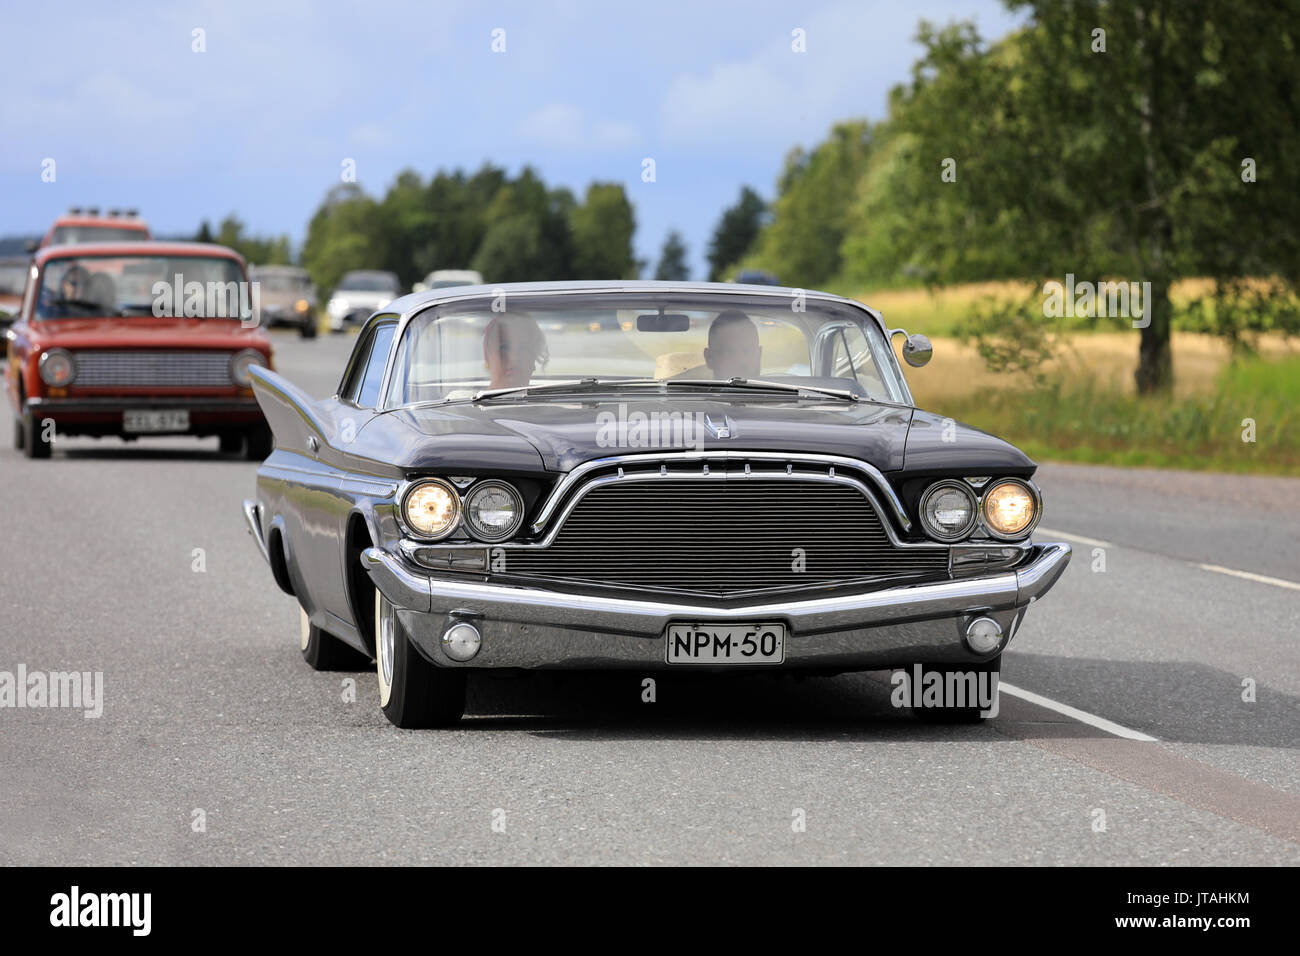 SOMERO, Finnland - 5. AUGUST 2017: Schwarz Chrysler Desoto Adventurer, wahrscheinlich 1960, bewegt sich entlang der Autobahn auf Maisemaruise 2017 Auto Kreuzfahrt Spätsommer eve Stockfoto